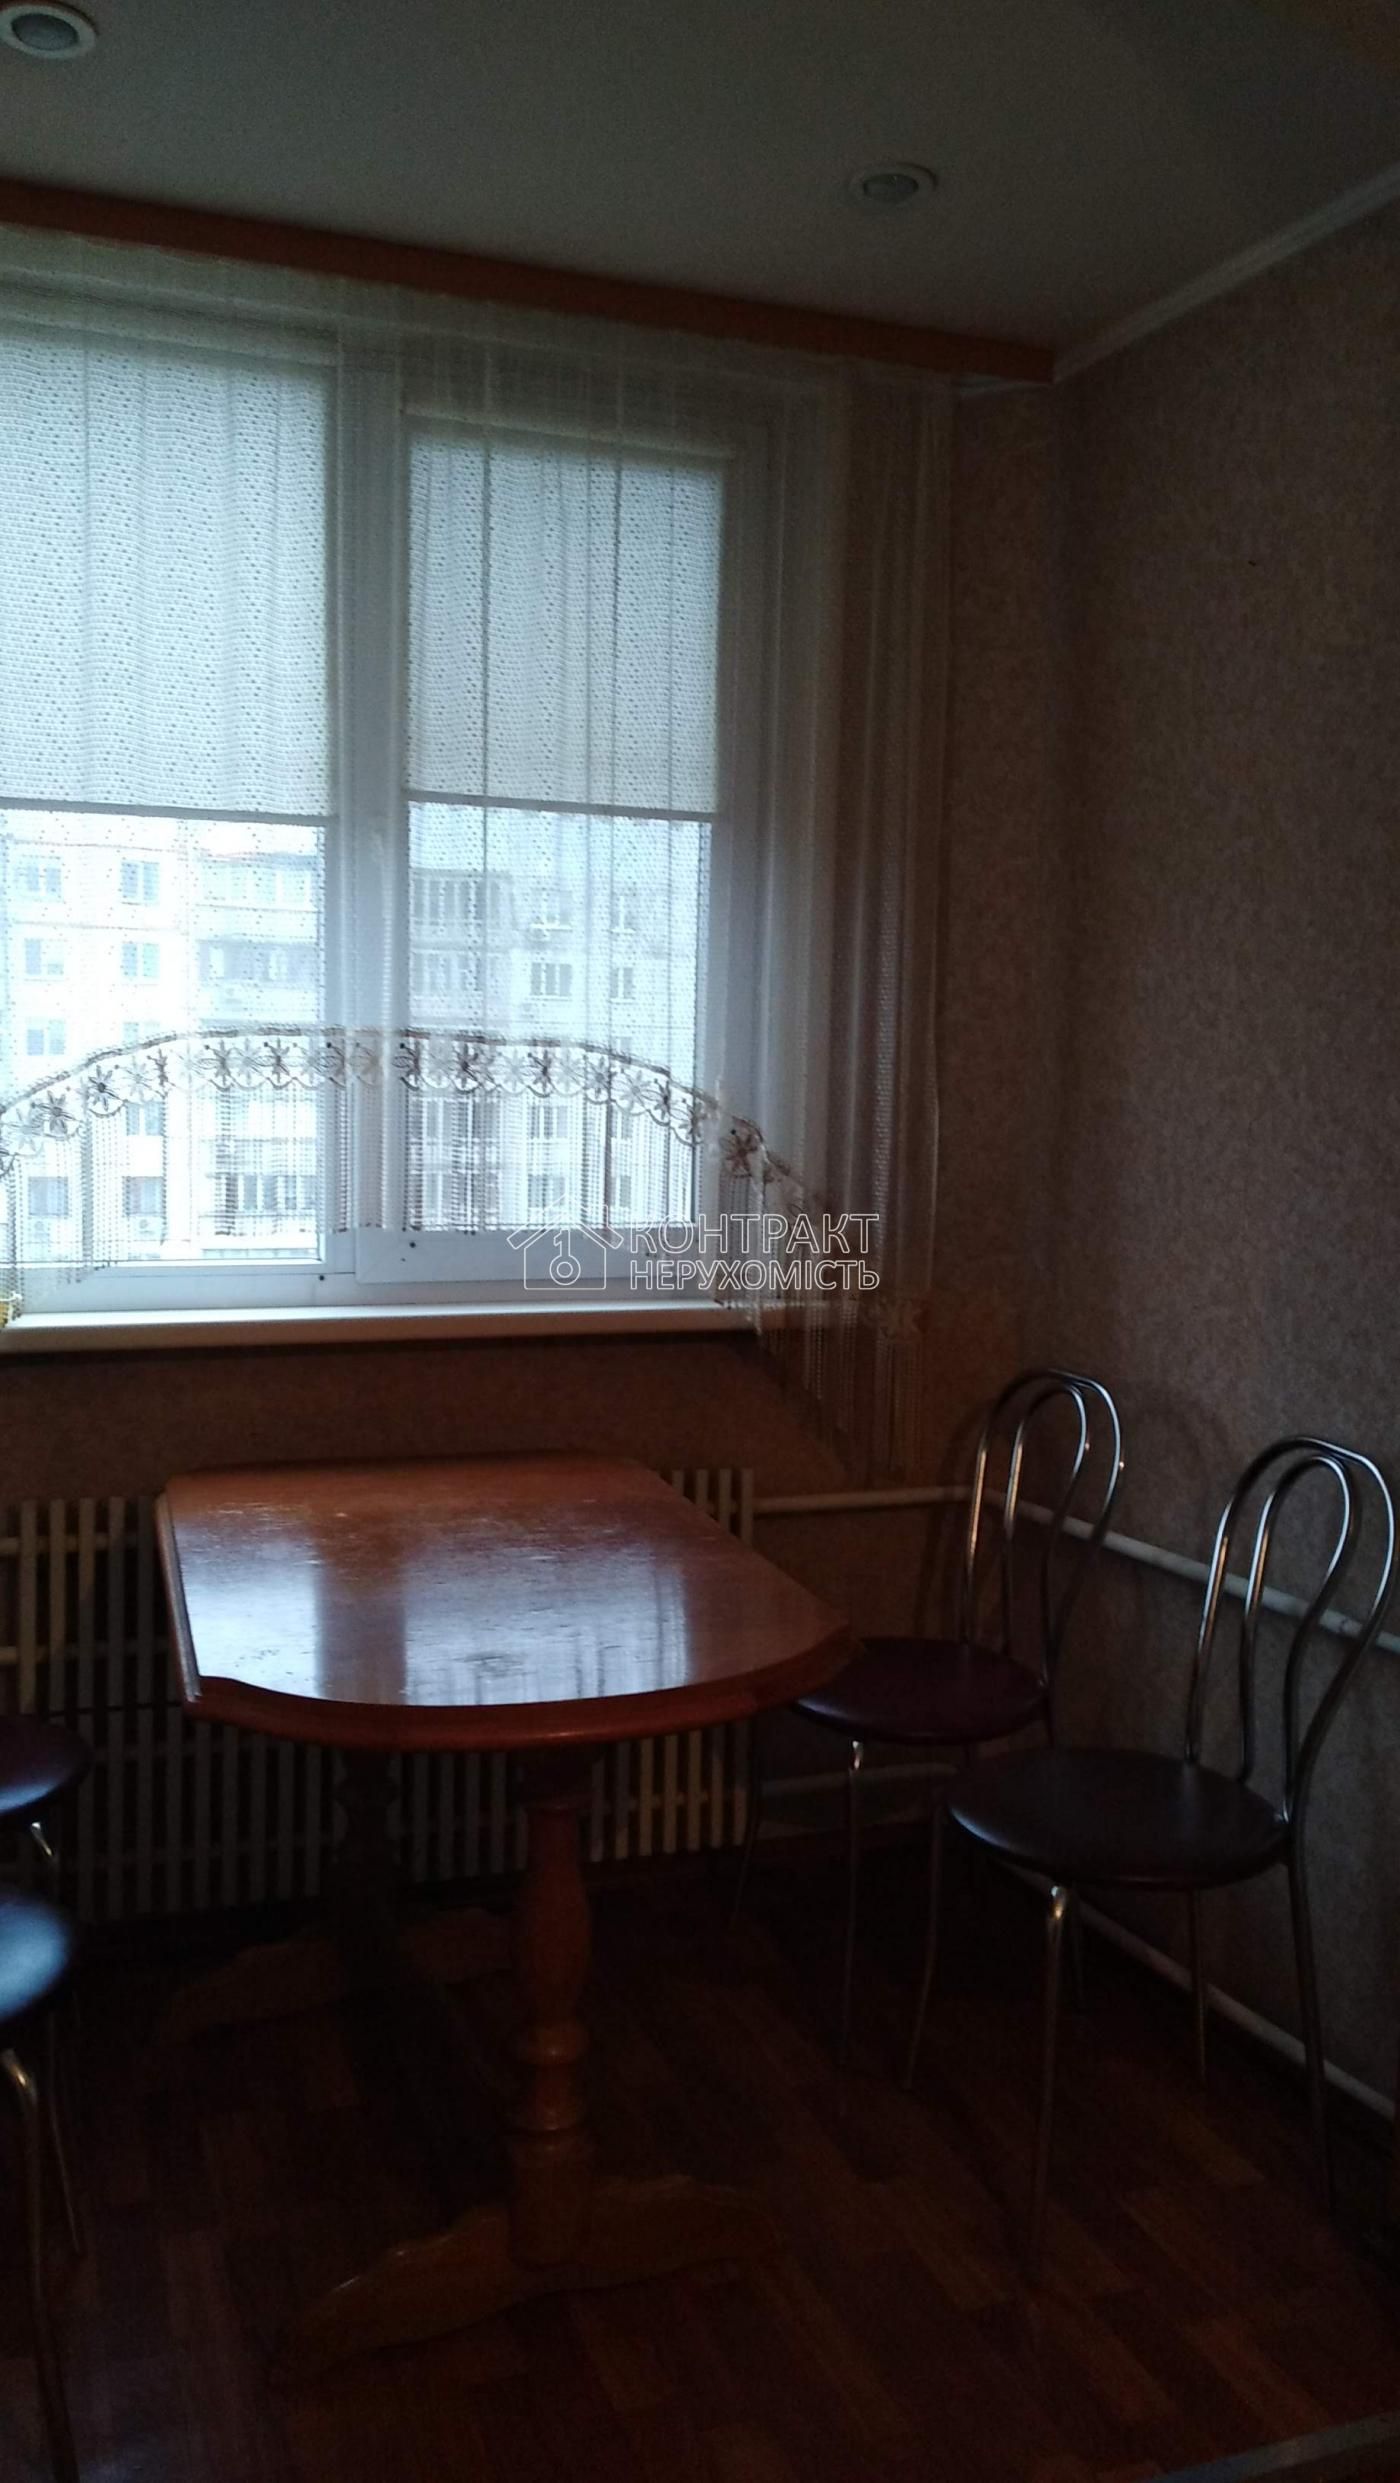 продам 3 кімнатну квартиру в М.Харків м. Героїв праці